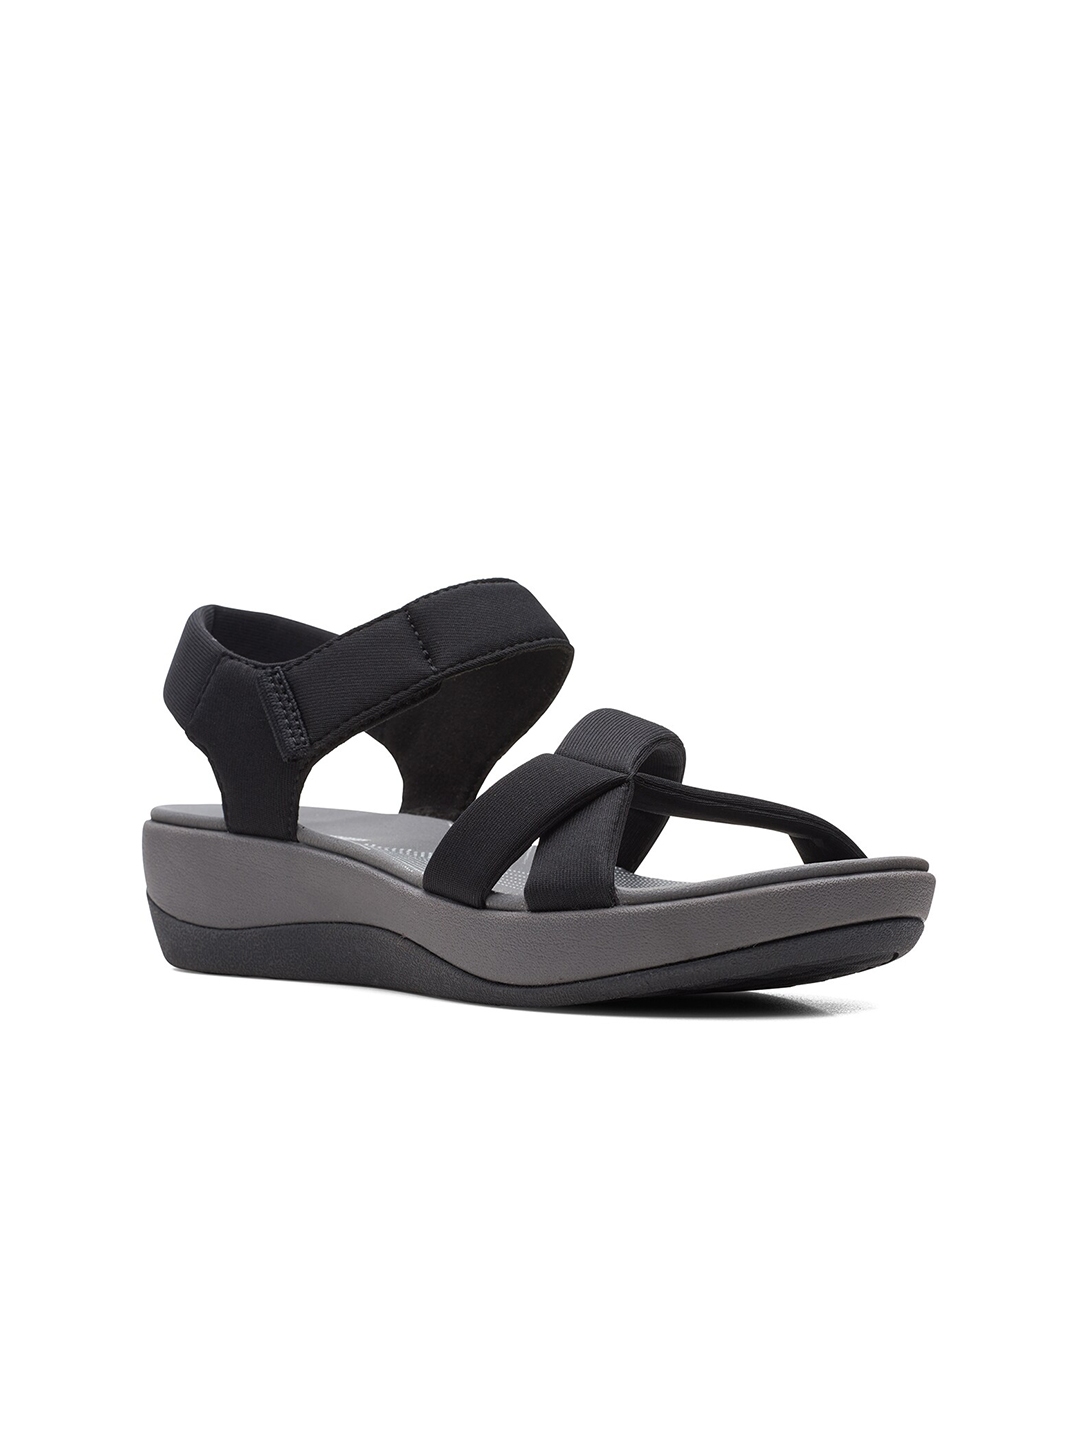 Buy Clarks Black Wedge Sandals - Heels for Women 16595090 | Myntra